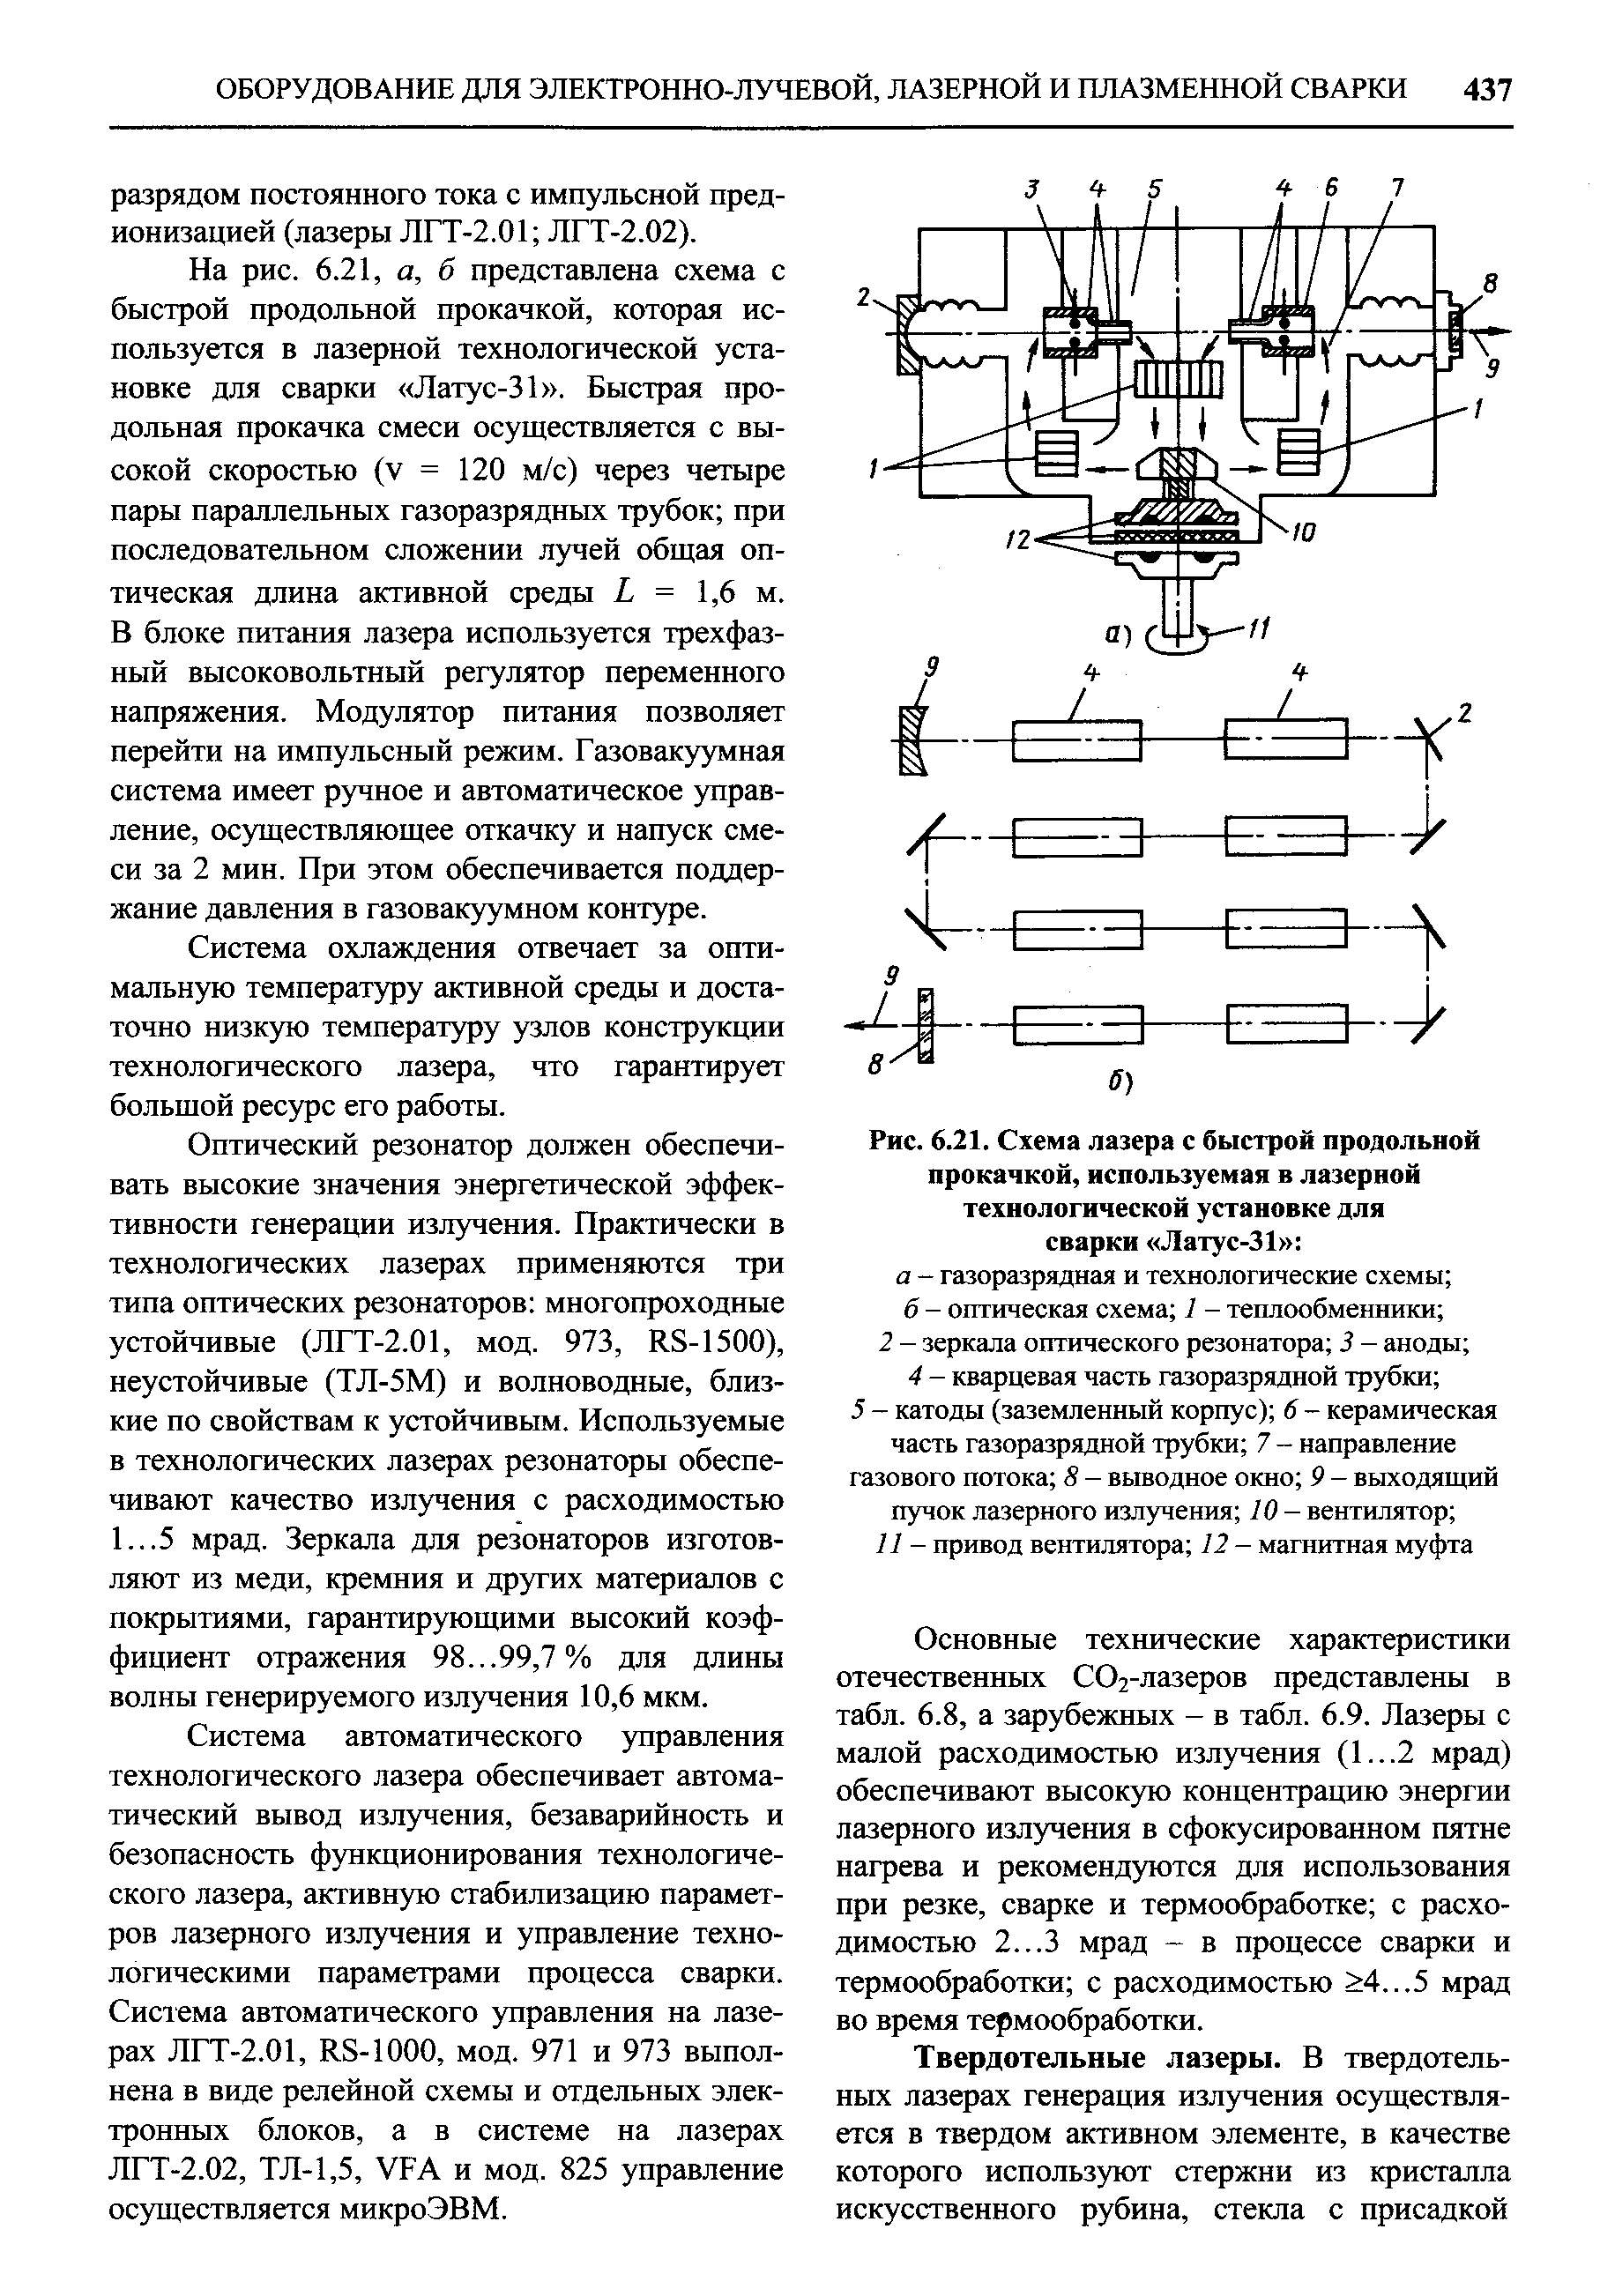 Рис. 6.21. <a href="/info/565190">Схема лазера</a> с быстрой продольной прокачкой, используемая в лазерной технологической установке для сварки Латус-31 
